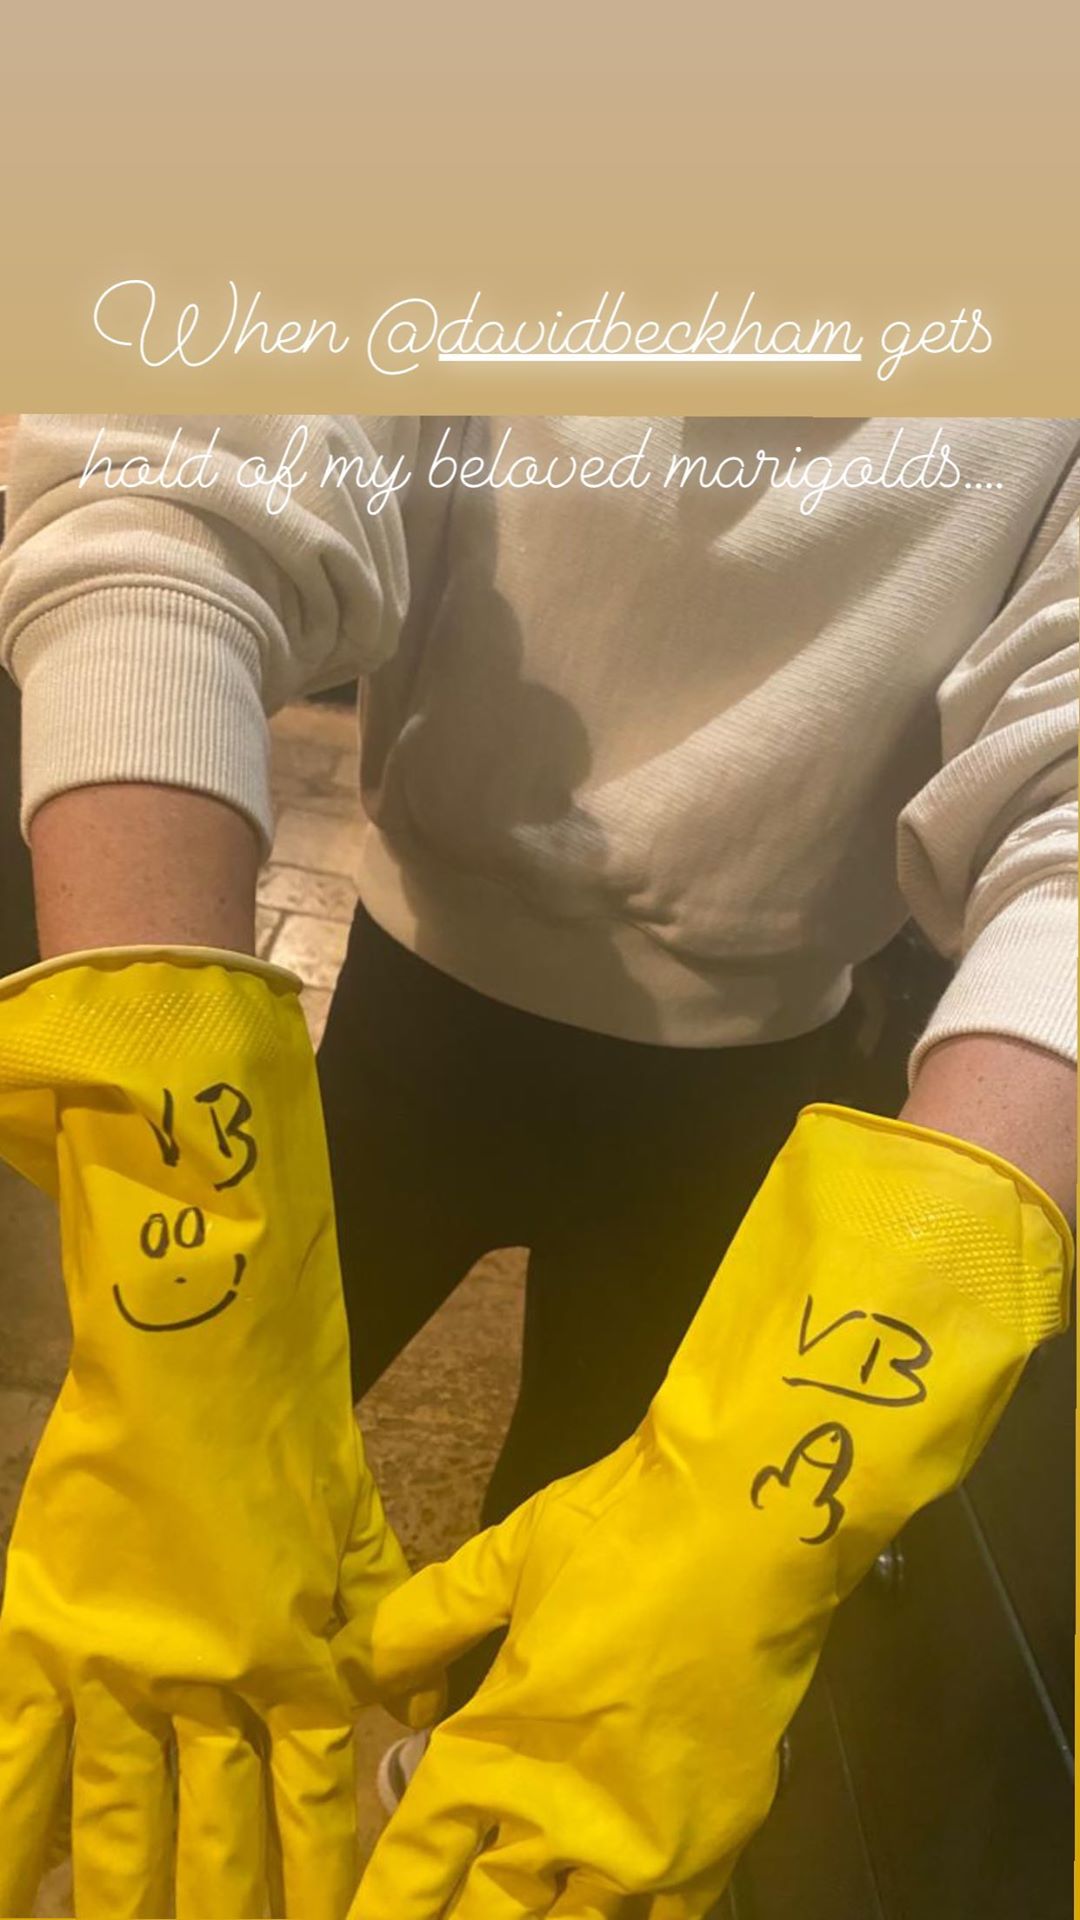 Luvas de Victoria Beckham "vandalizadas" pelo marido